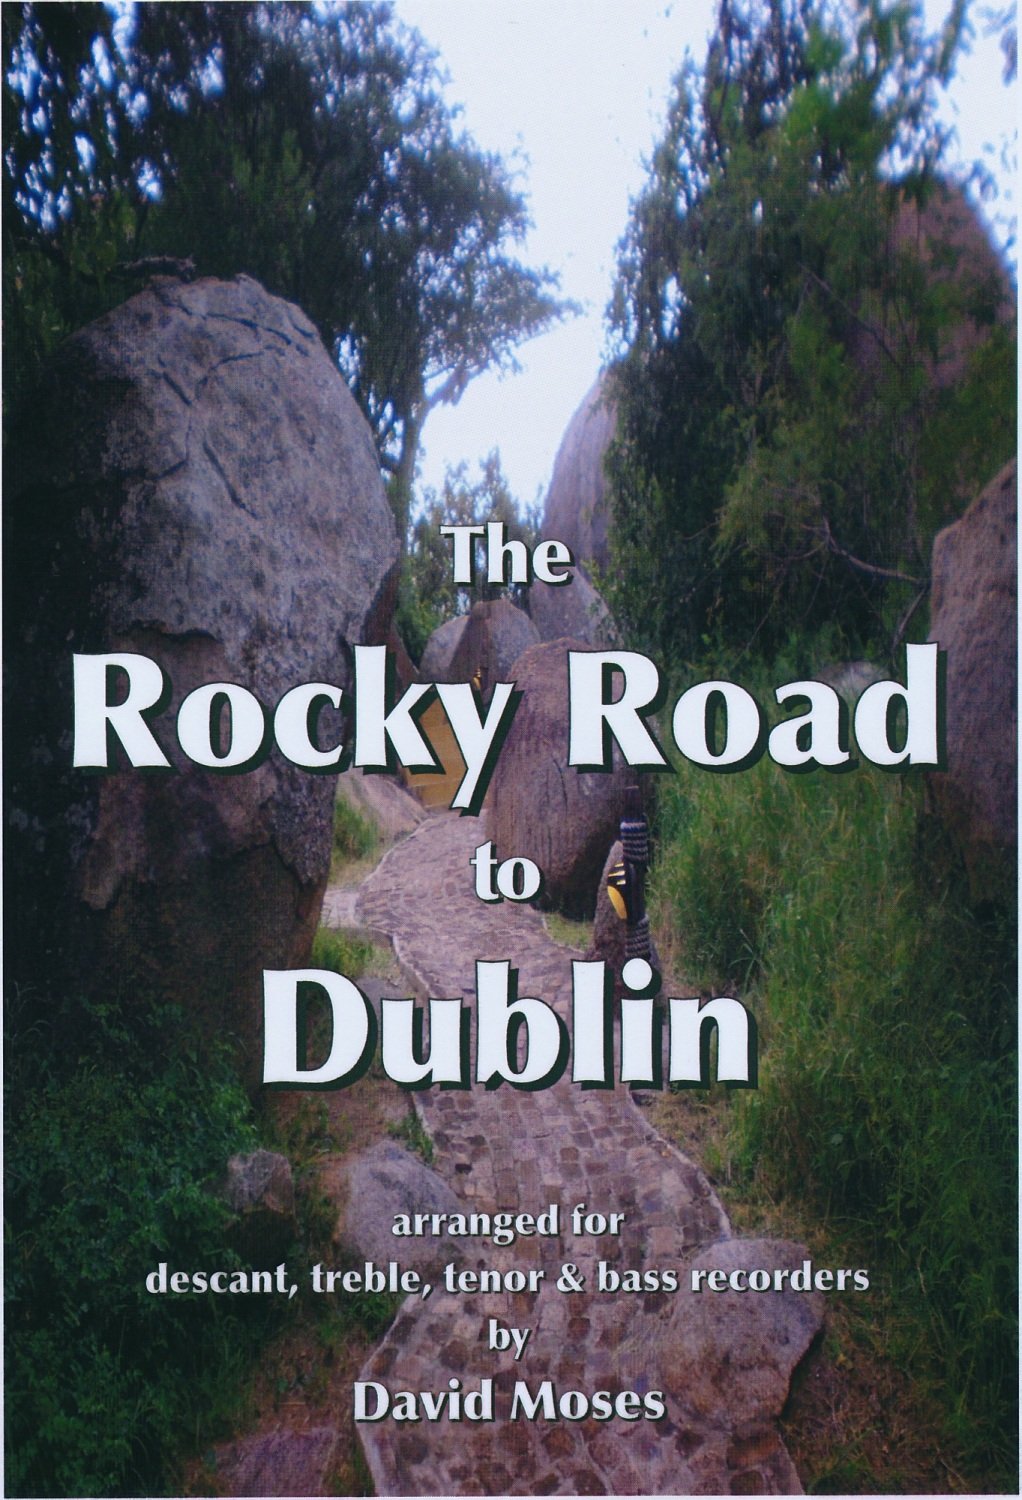 Rocky Road to Dublin